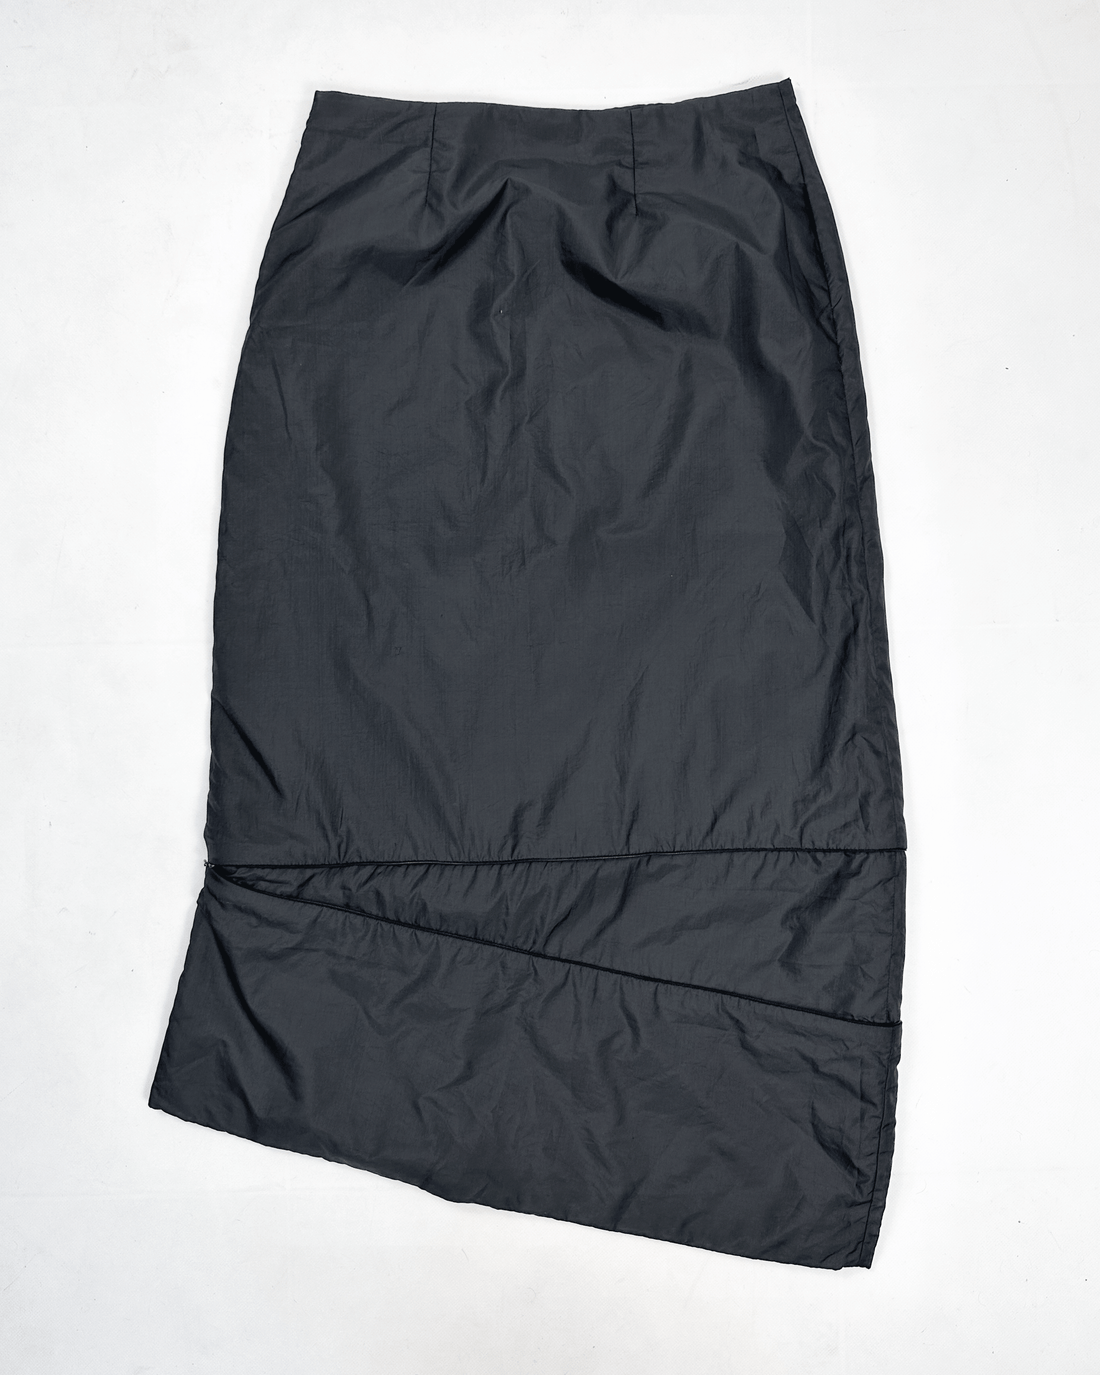 Sarah Pacini Convertible Maxi Skirt 2000's